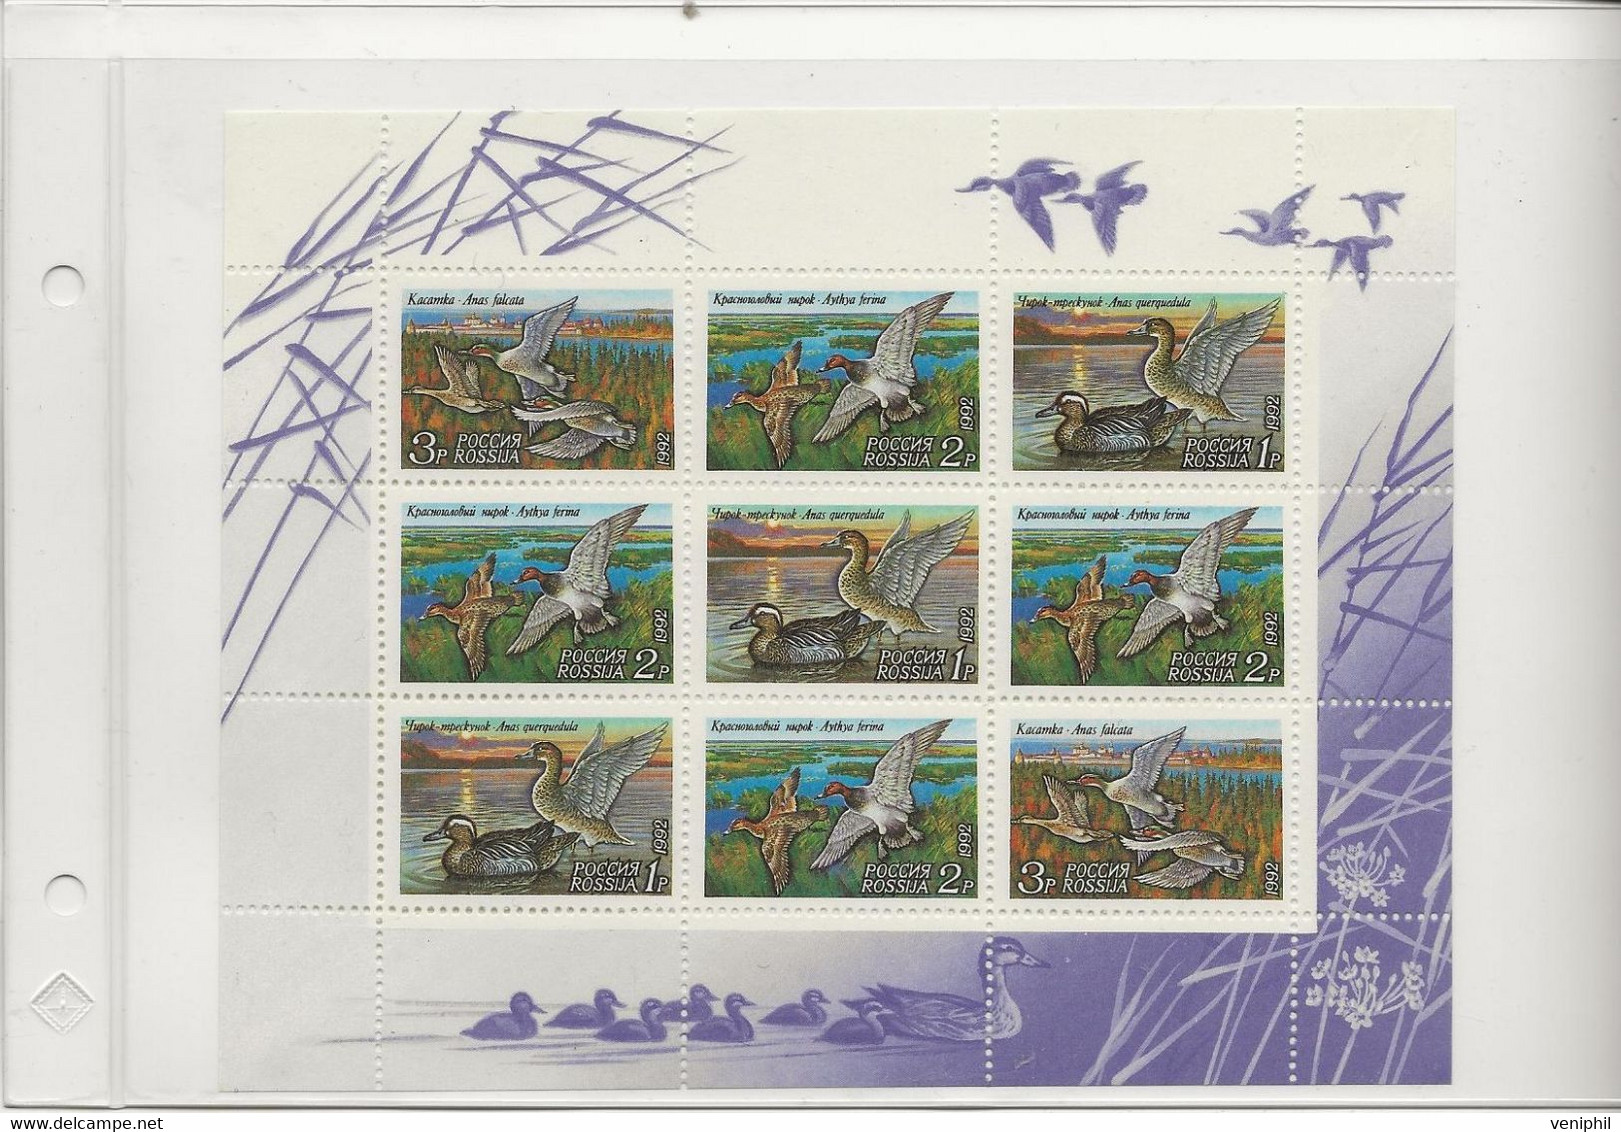 RUSSIE - CANARDS - N° 5958 A 5960 EN FEUILLET -ANNEE 1992 - Blocks & Sheetlets & Panes